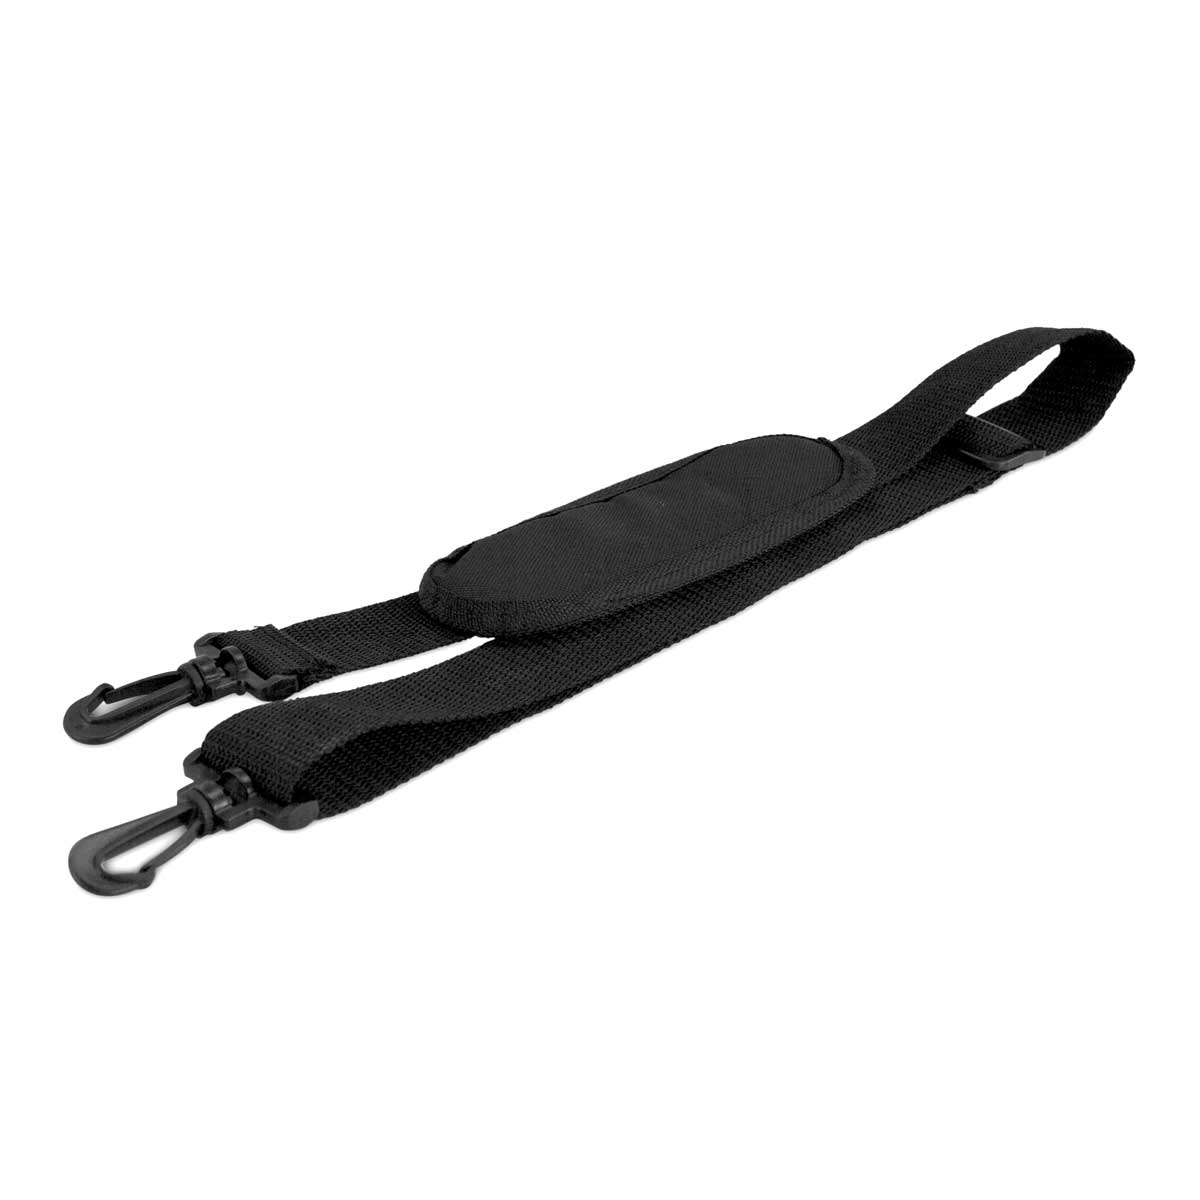 adjustable bag shoulder strap